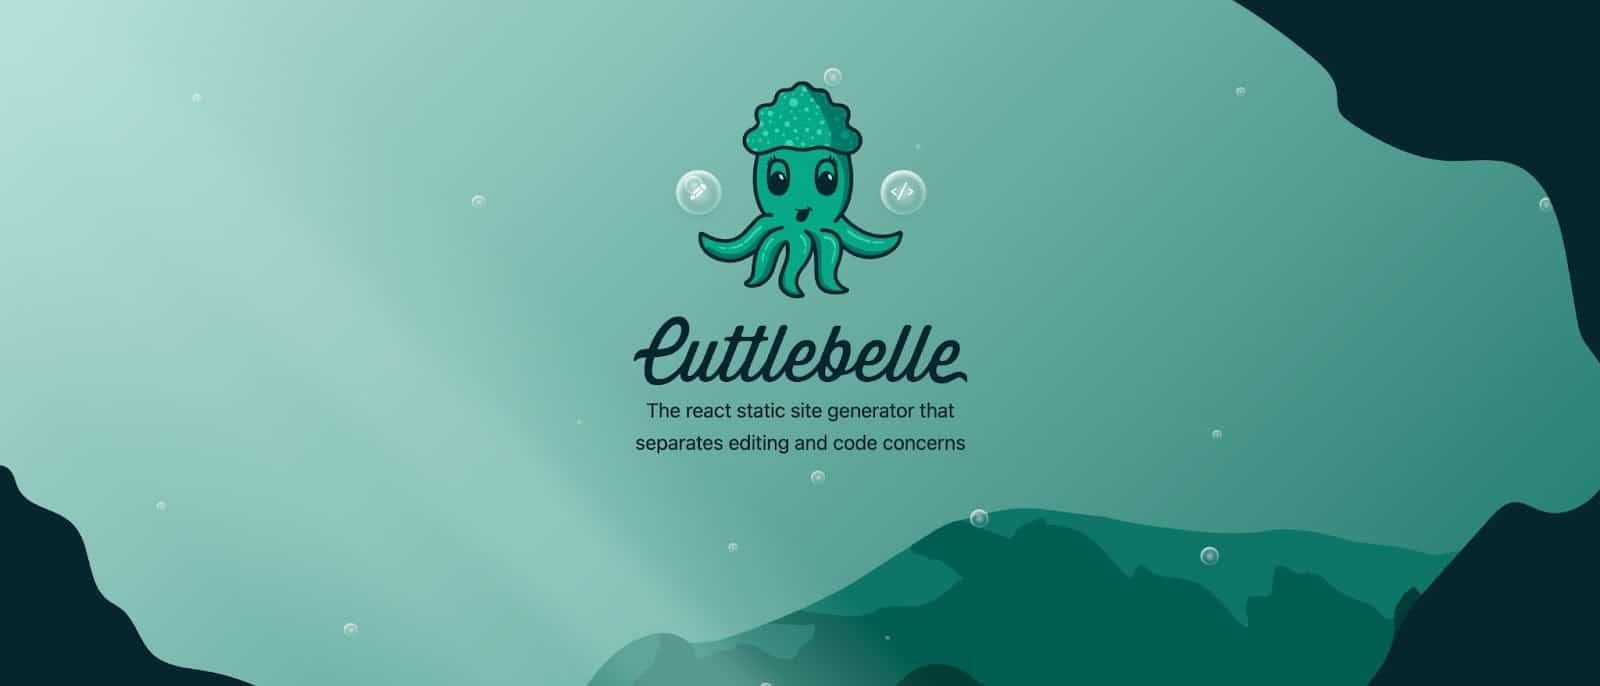 Strona główna witryny Cuttlebelle